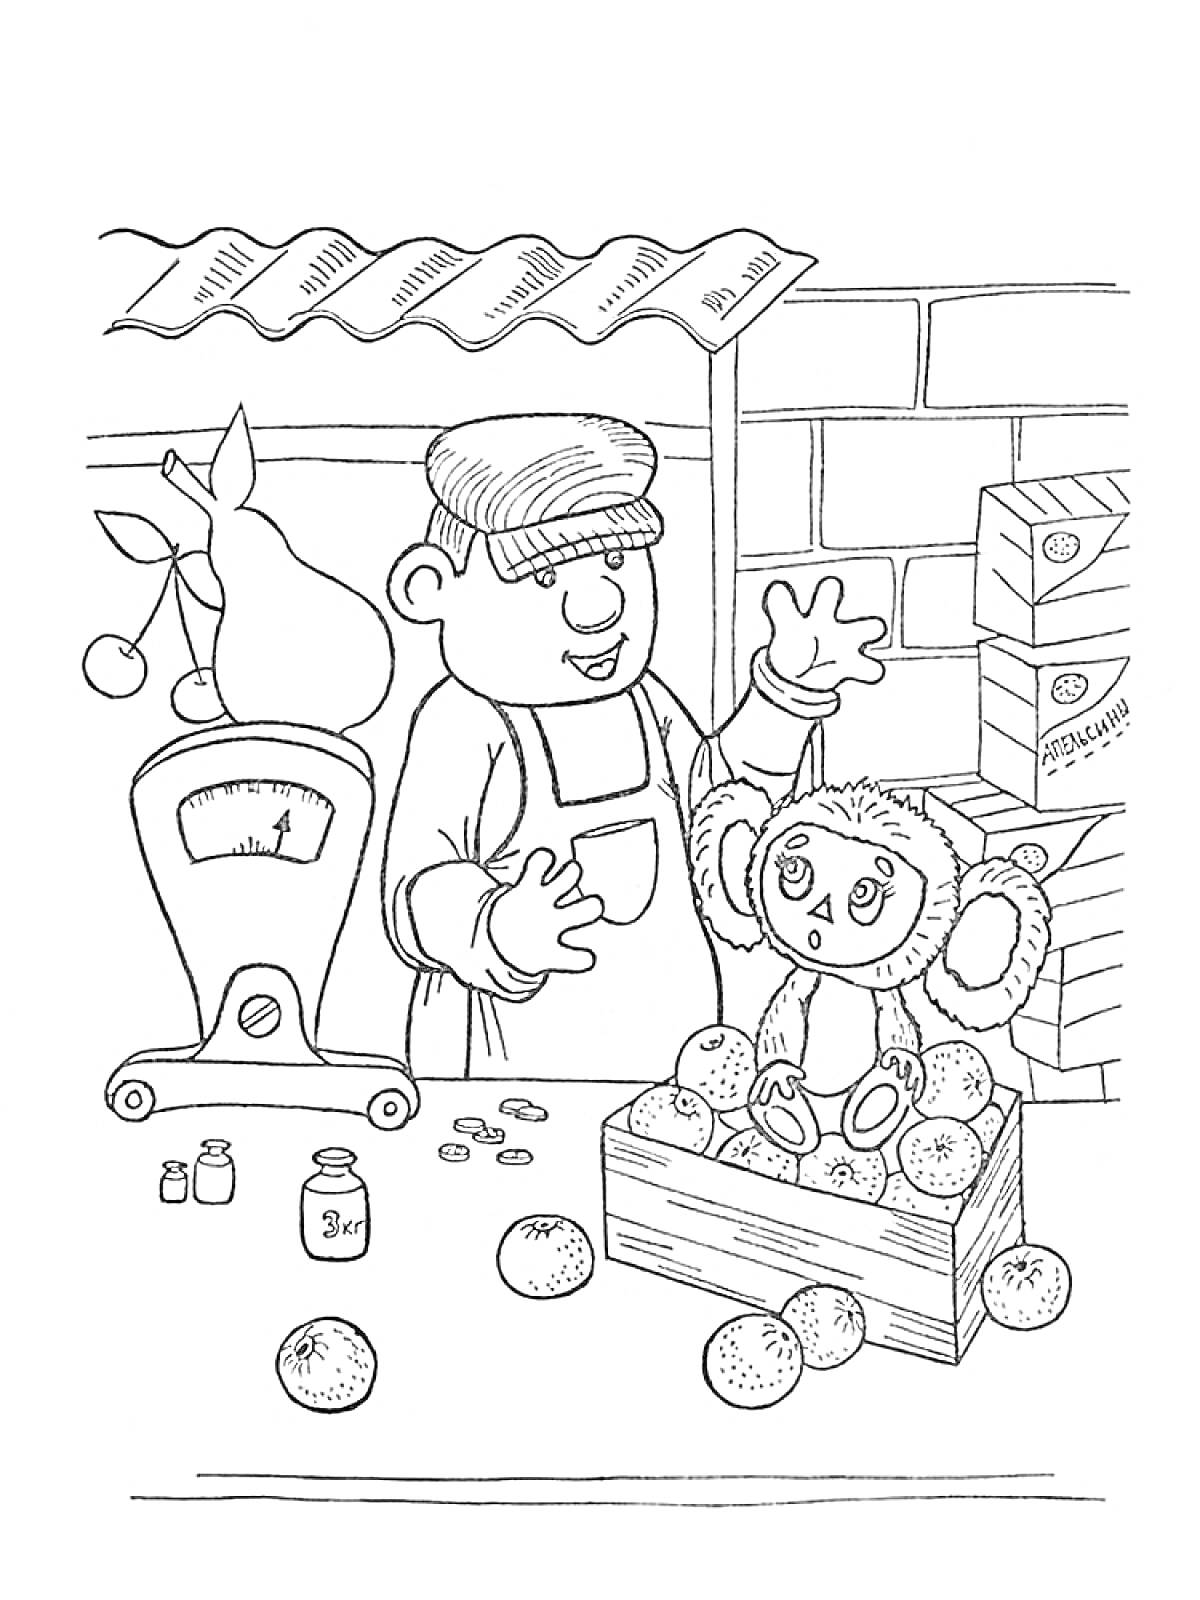 Раскраска Чебурашка на прилавке с апельсинами и продавец